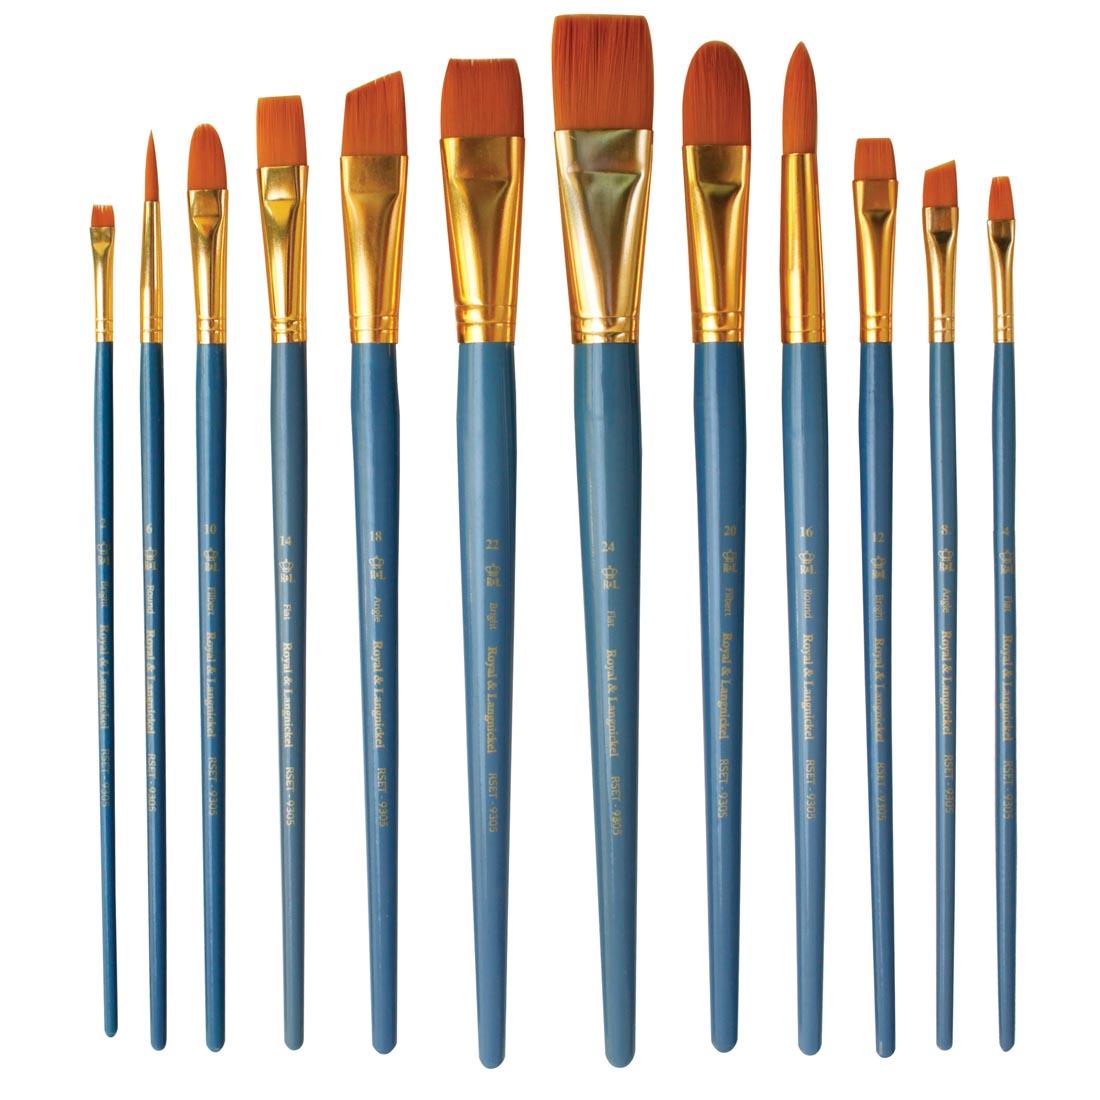 Royal & Langnickel Gold Taklon 12-Brush Value Pack